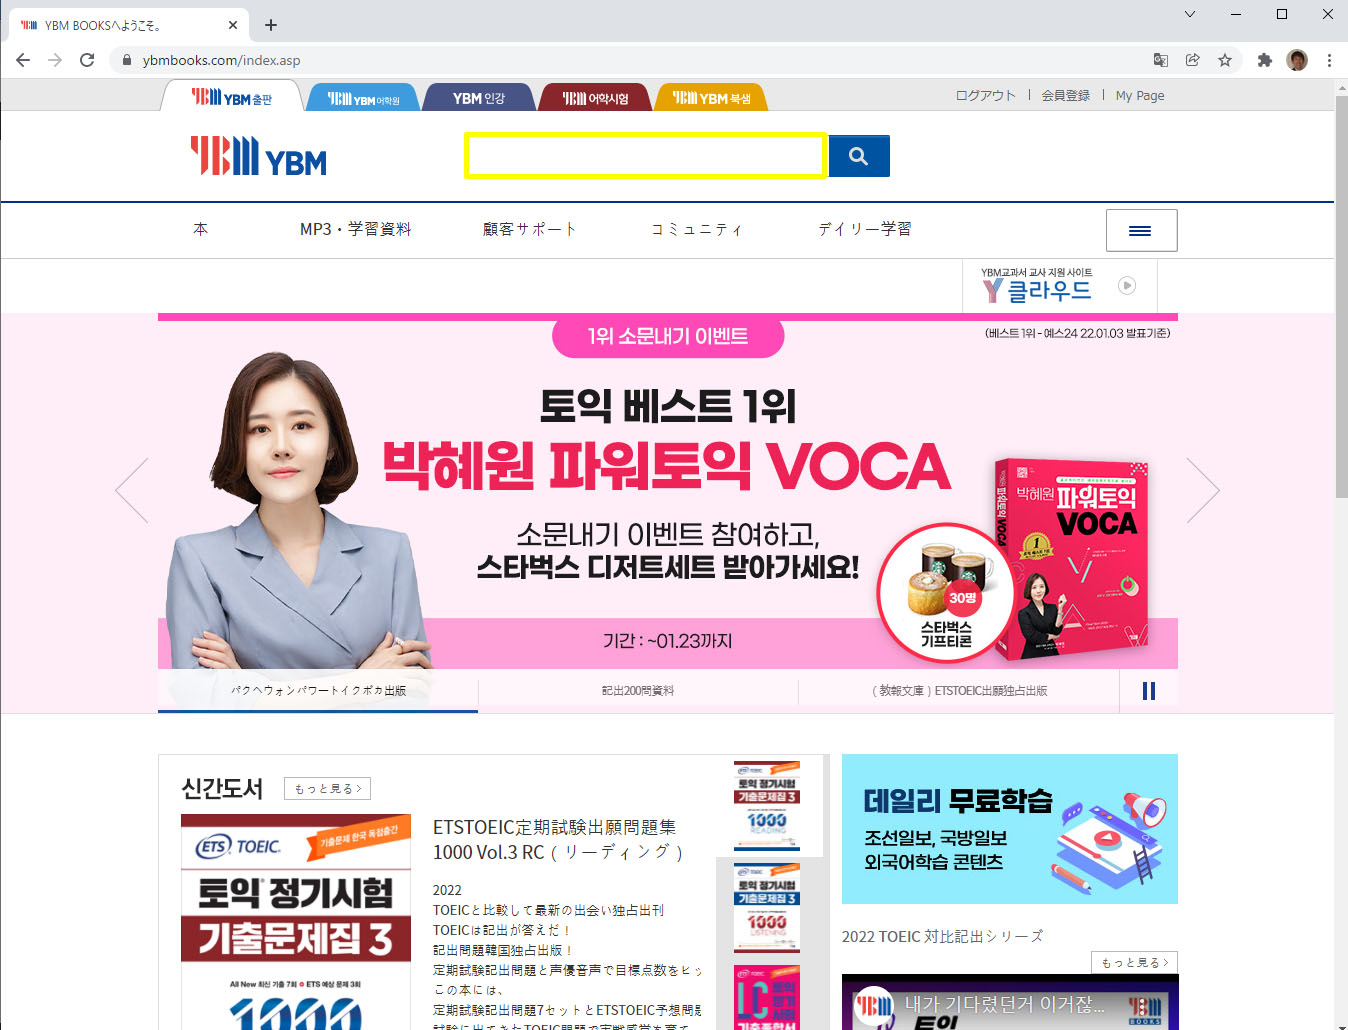 韓国TOEIC既出問題集（TOEIC過去問題集）の音声をダウンロードする方法